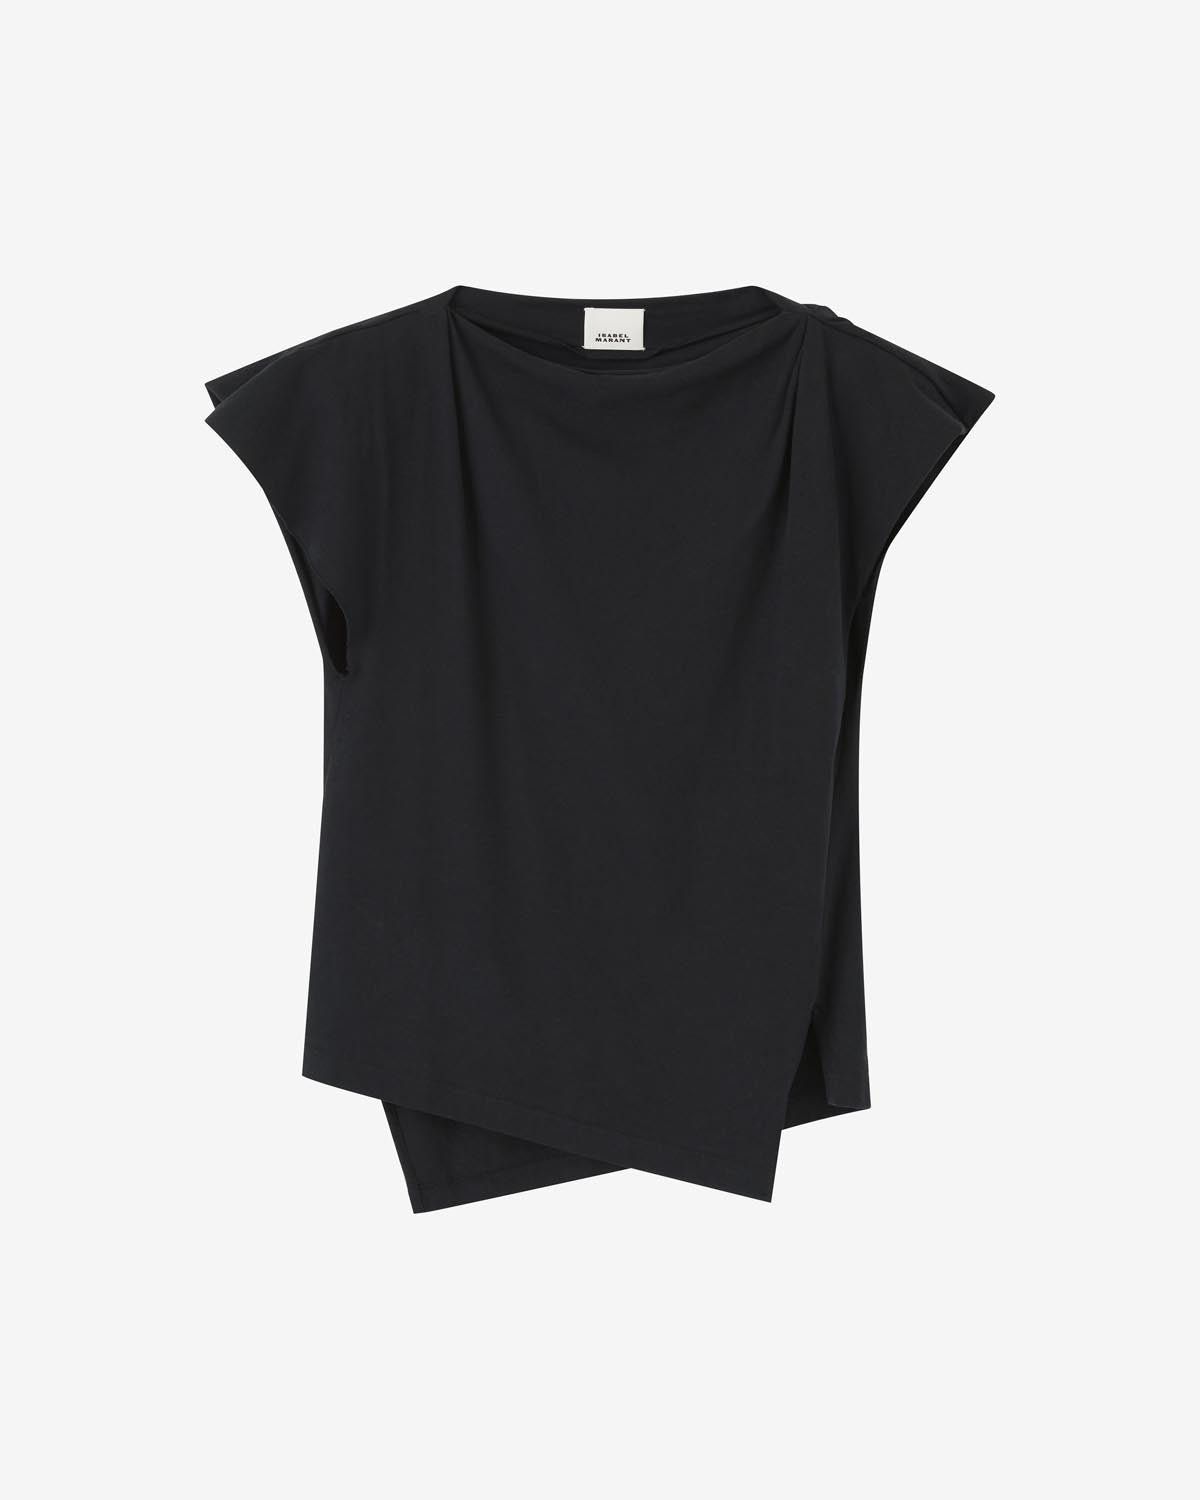 Sebani ティーシャツ Woman 黒 1